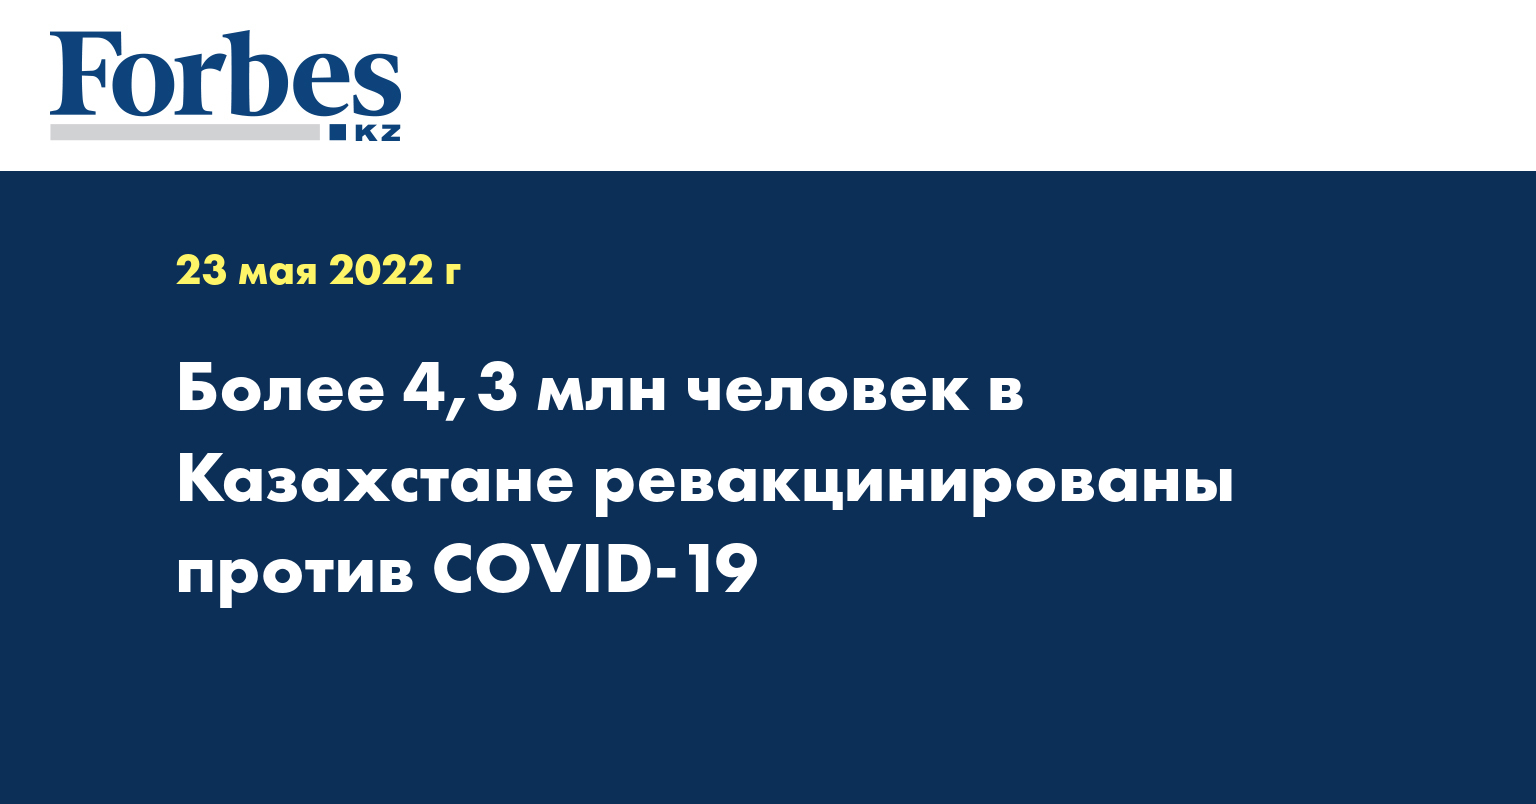 Более 4,3 млн человек в Казахстане ревакцинированы против COVID-19